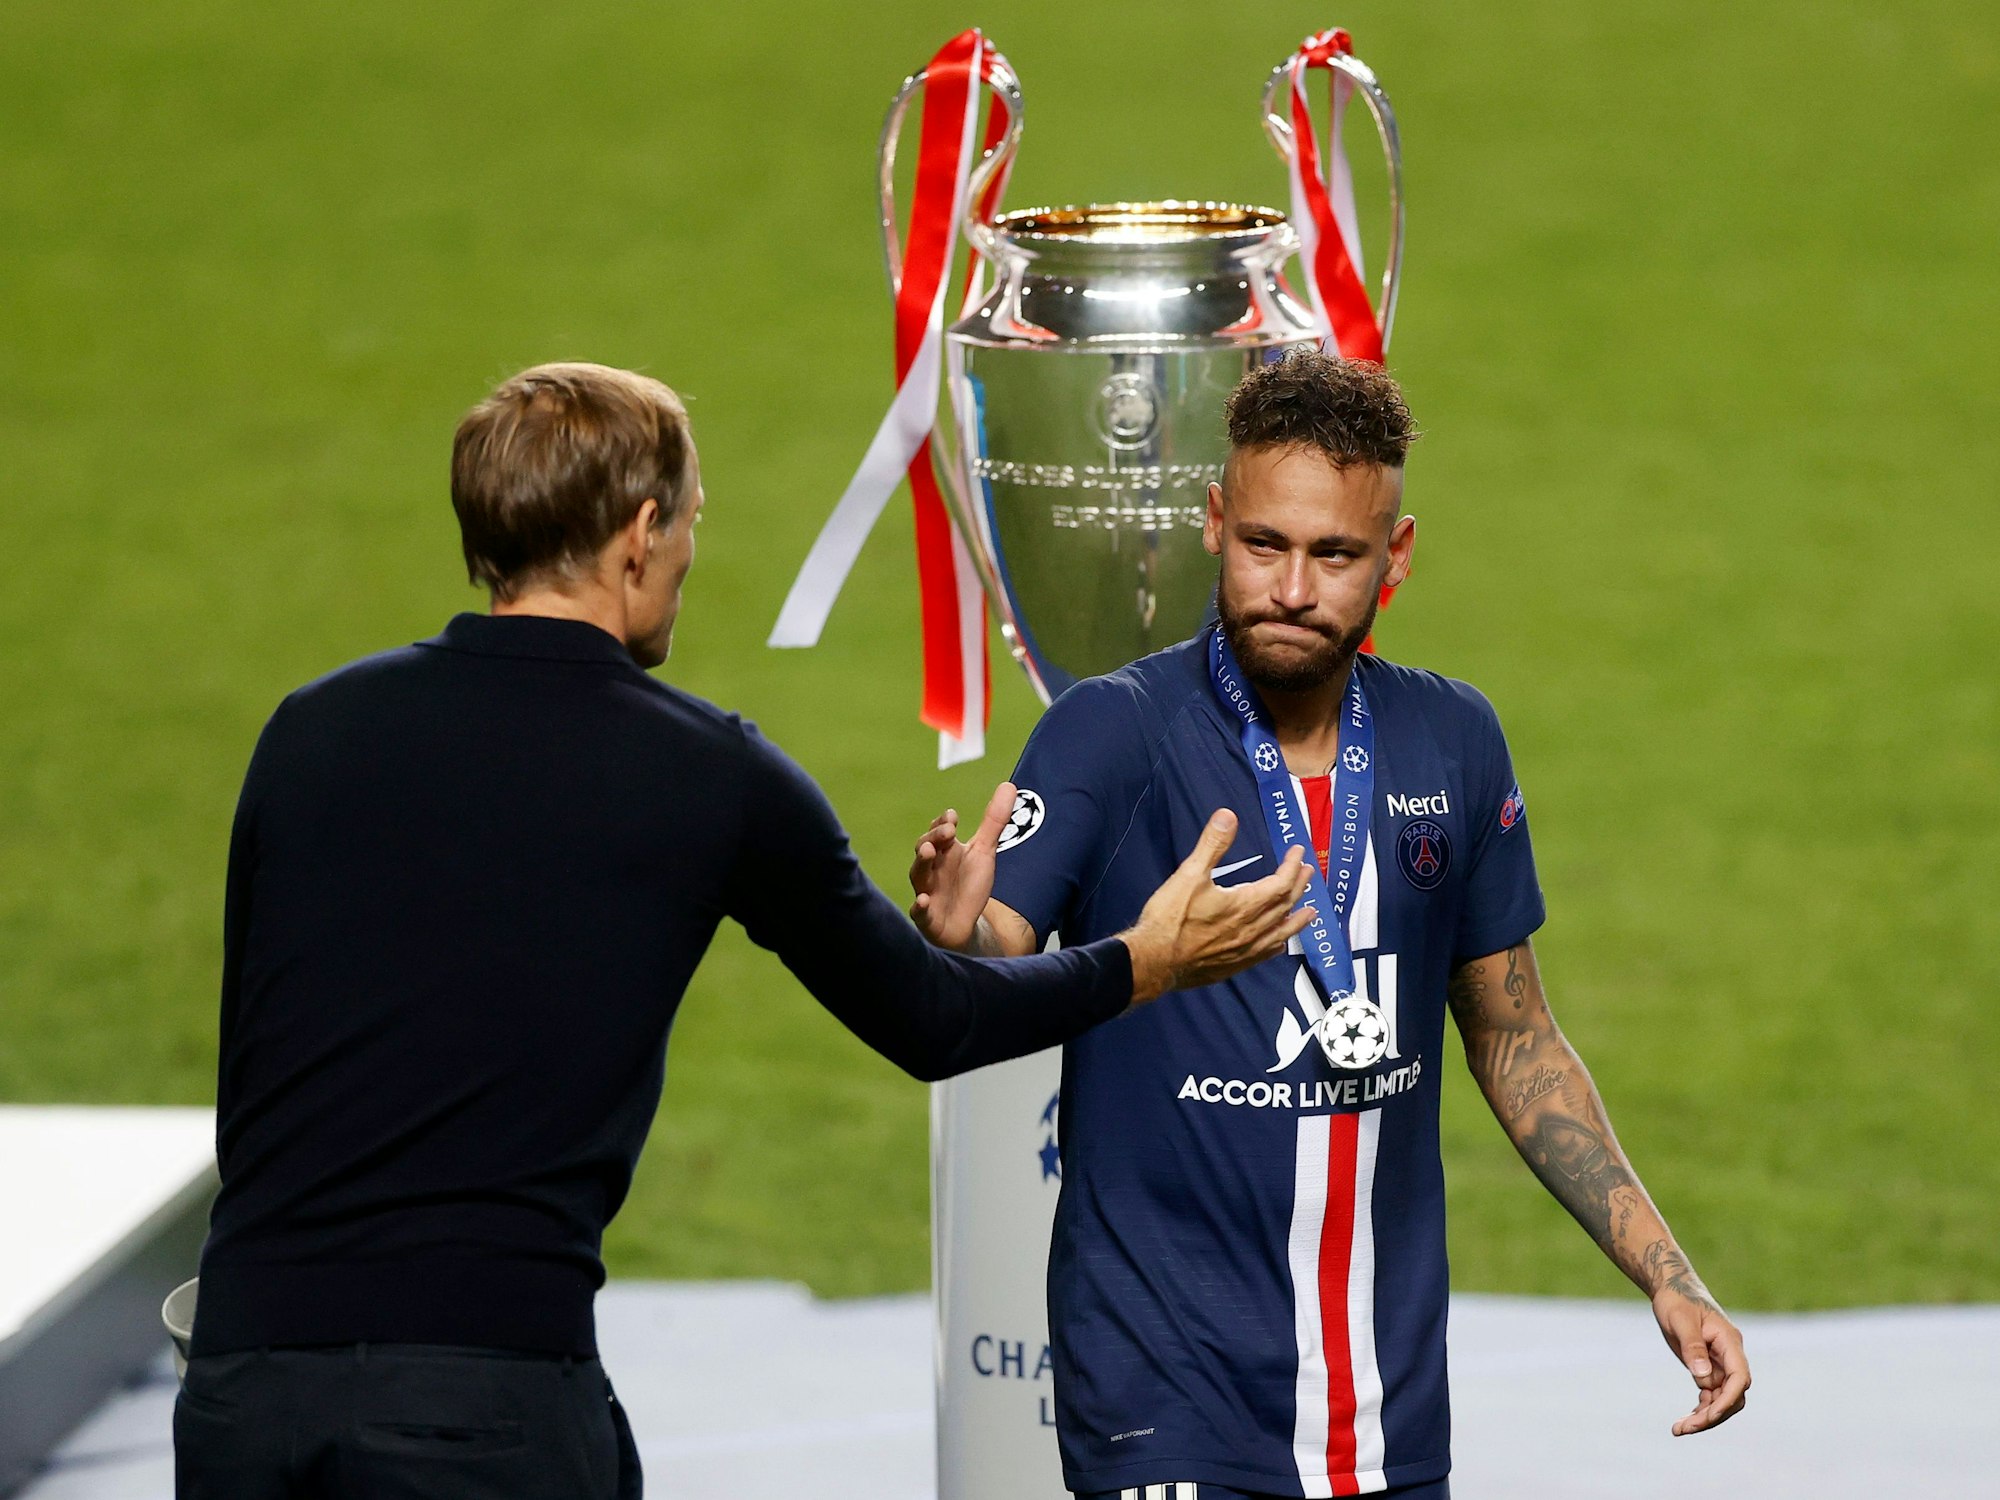 Der damalige PSG-Cheftrainer Thomas Tuchel schüttelt seinem Spieler Neymar nach dem Champions-League-Finale zwischen Paris Saint-Germain und Bayern München die Hand.